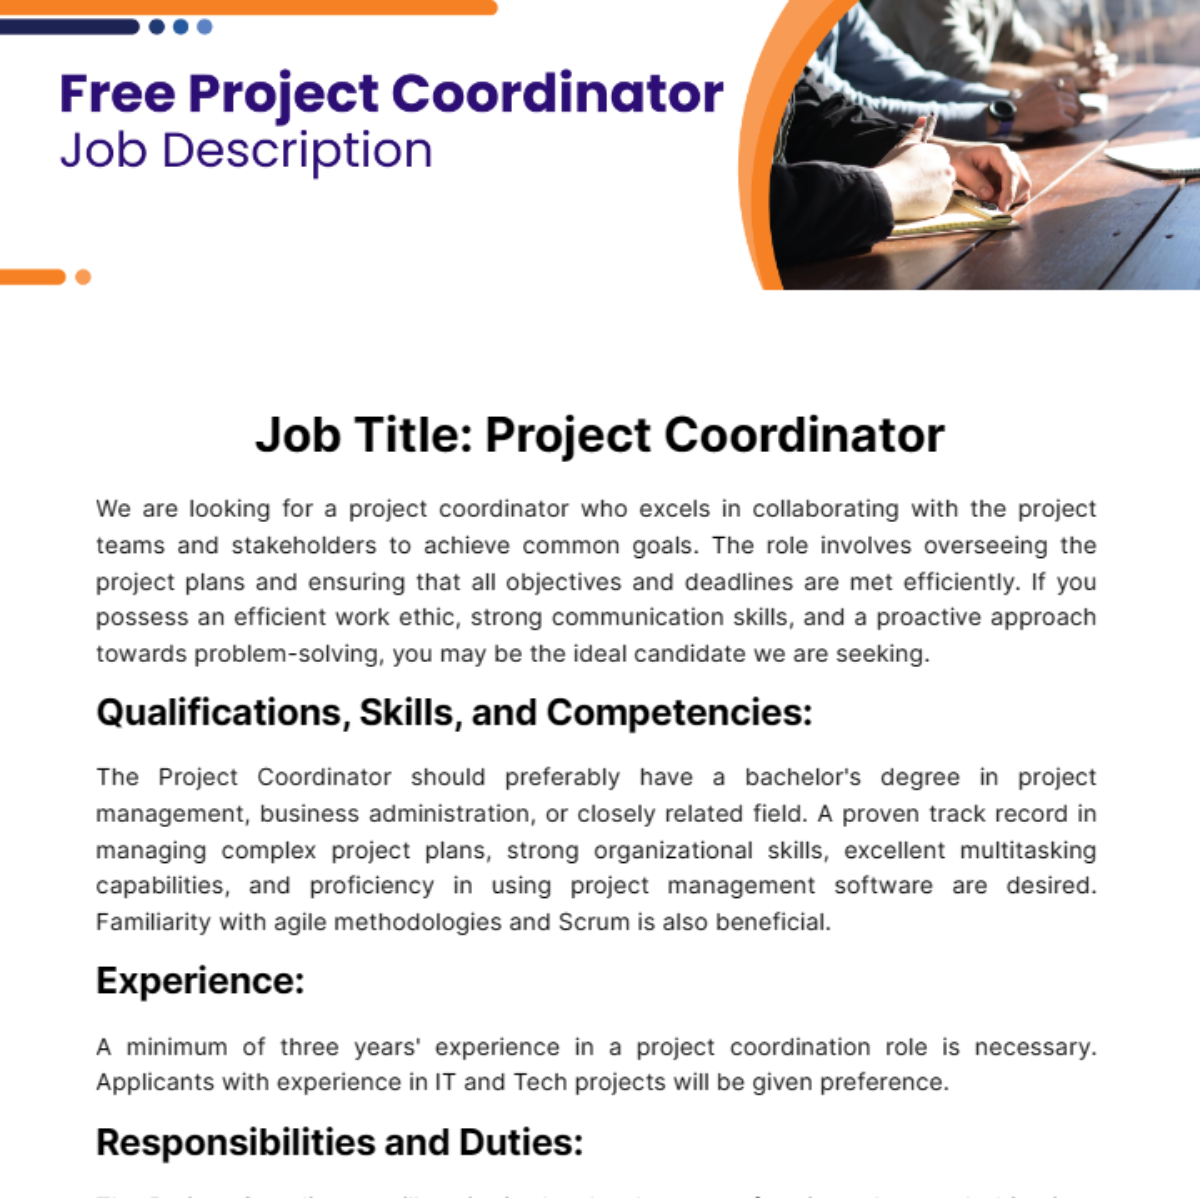 Free Project Coordinator Job Description Template